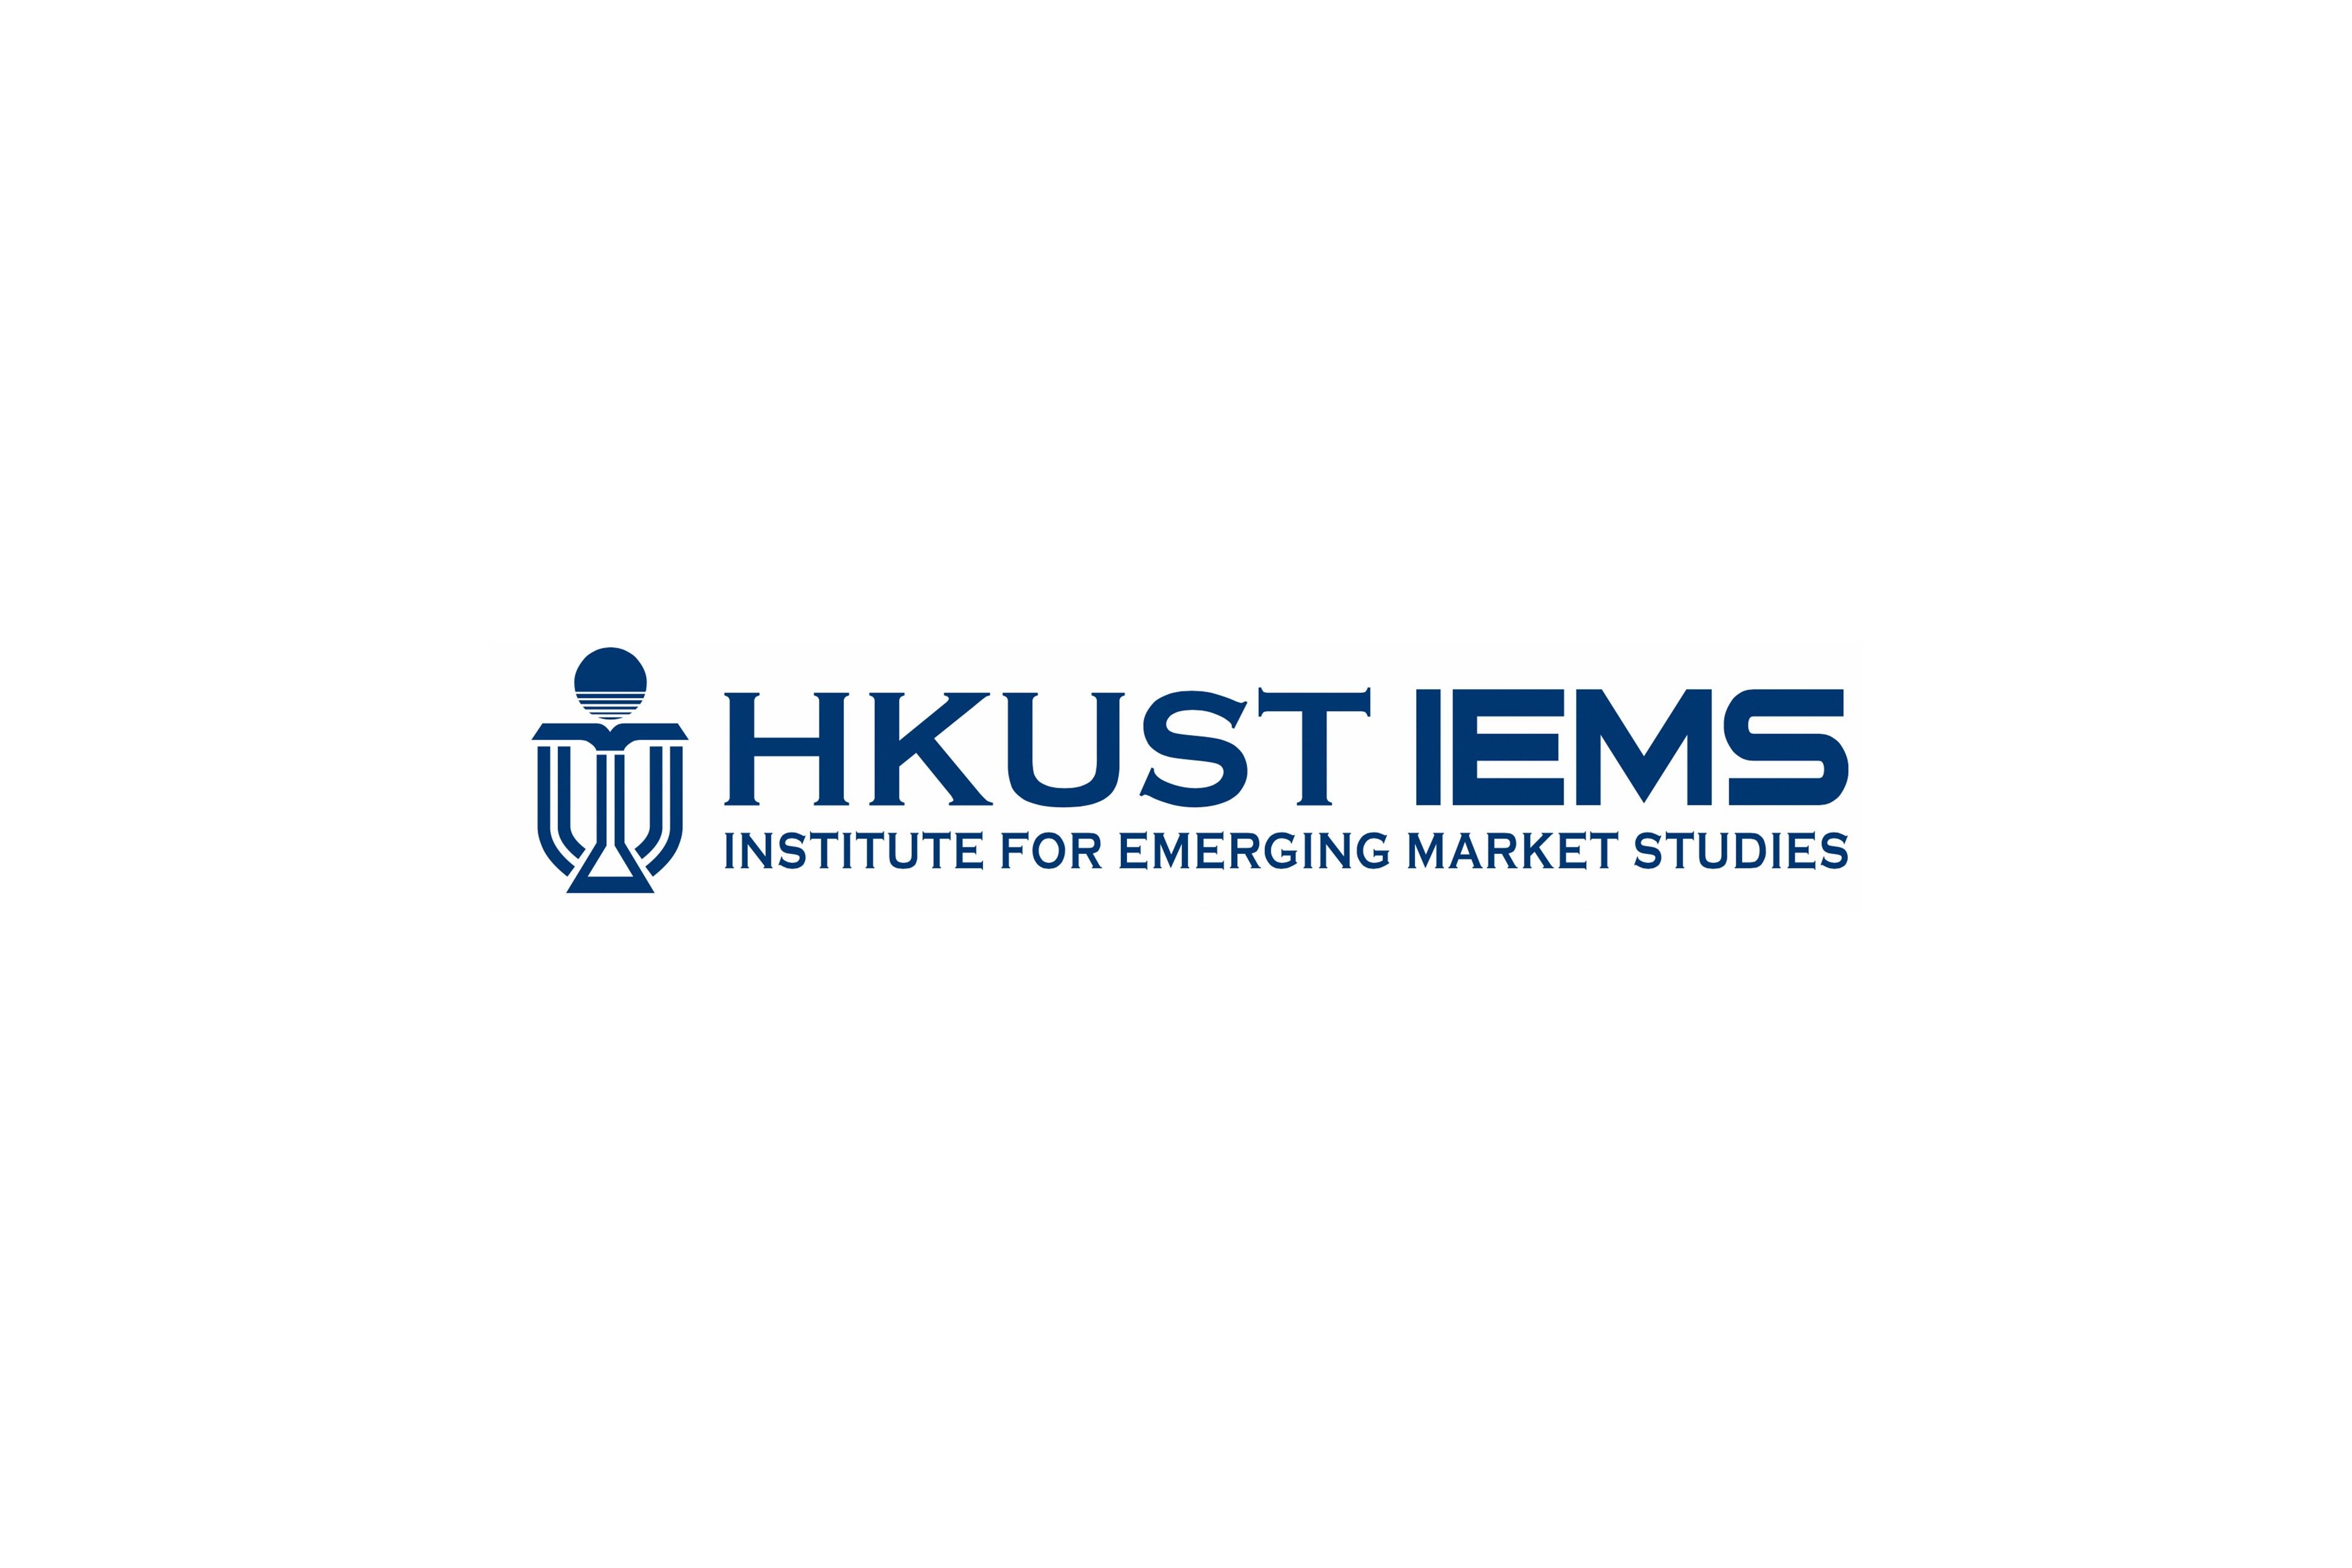 HKUST Institute for Emerging Market Studies logo